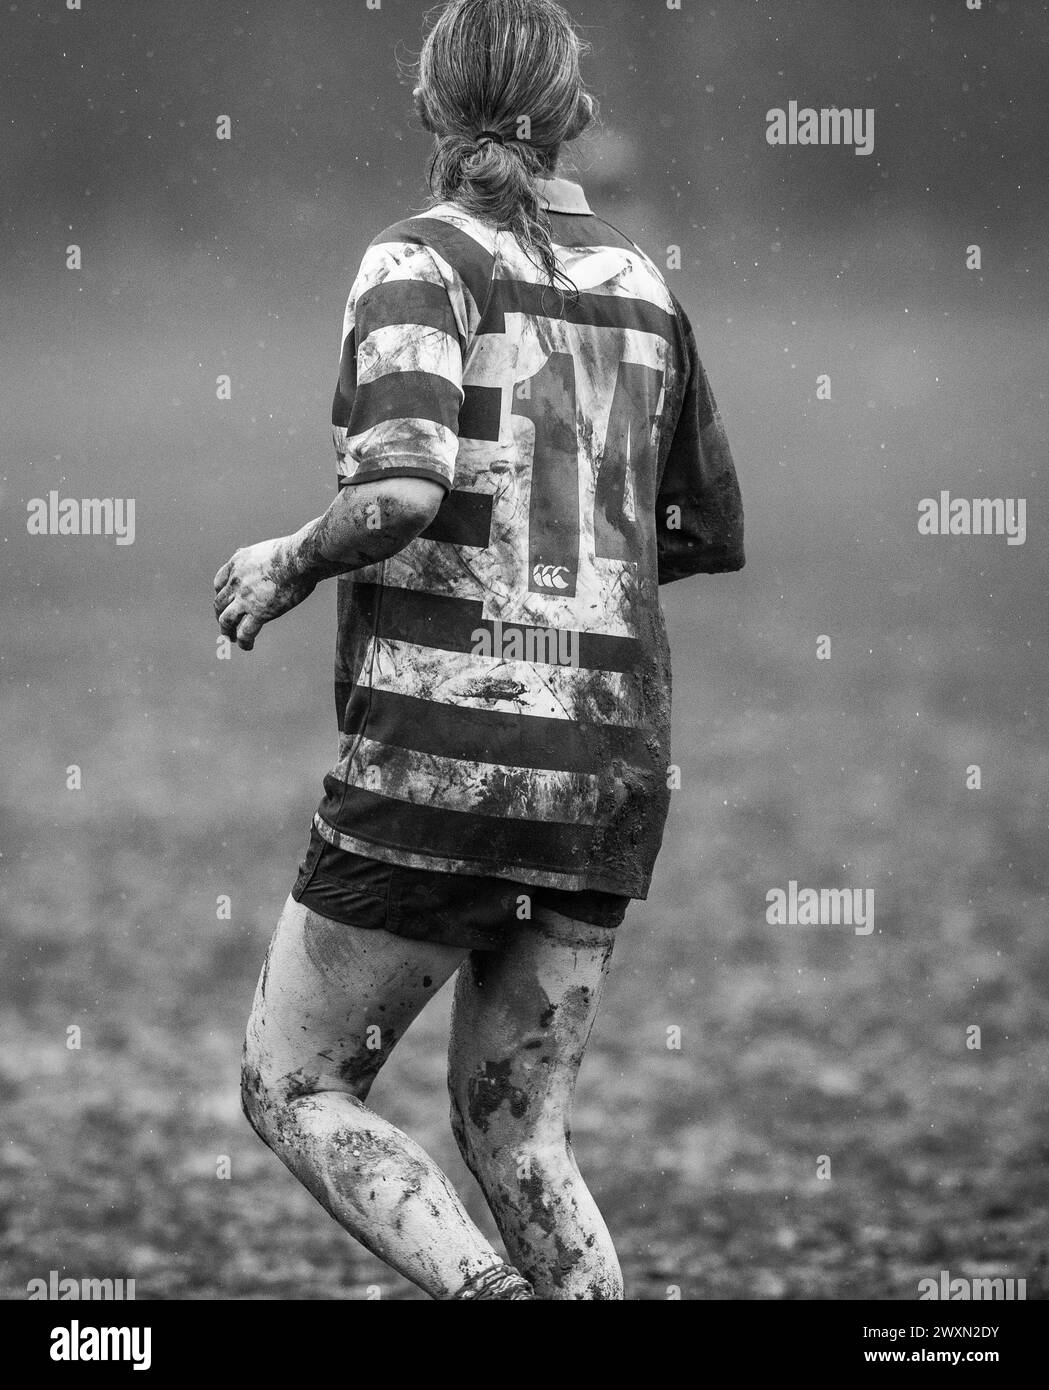 Anglais amateur rugby union jeu de femme jouant dans des conditions humides et boueuses et une chemise numéro 14. Banque D'Images